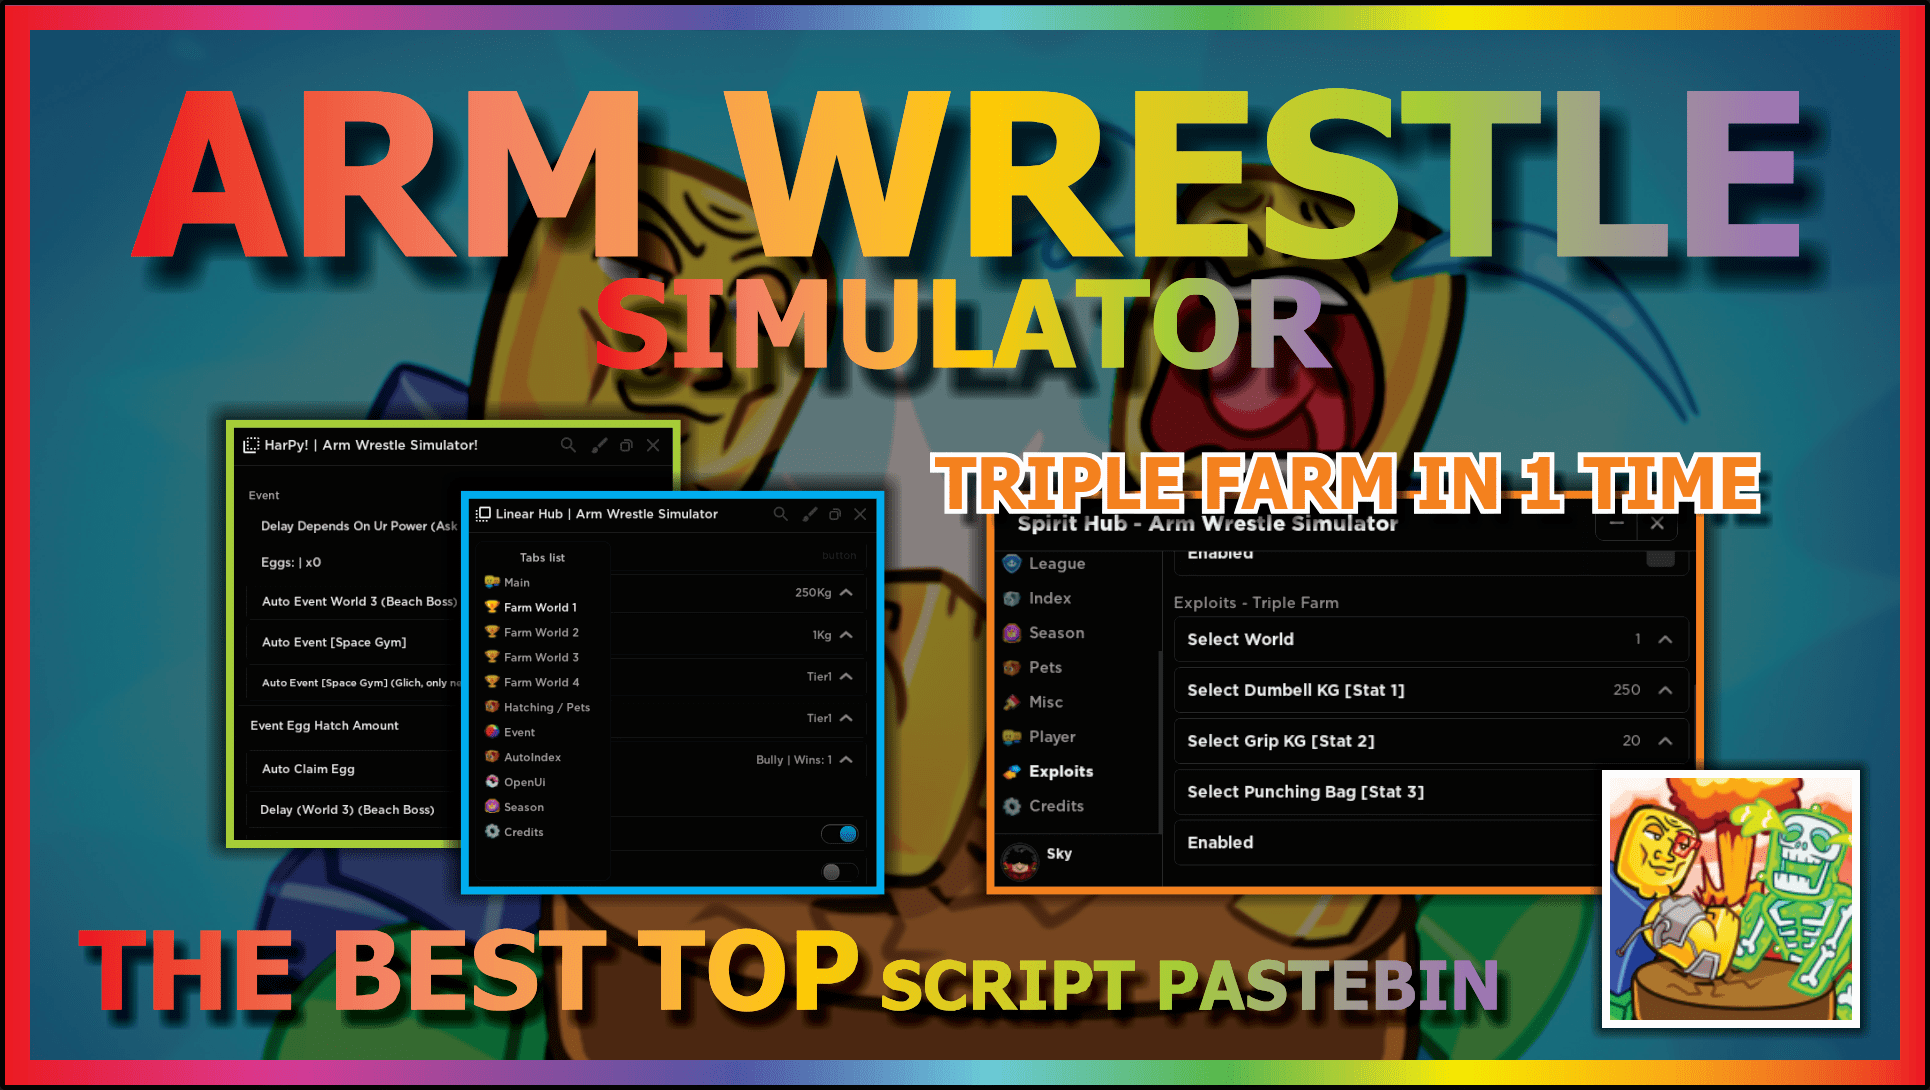 Auto Clicker Arm Wrestle Simulator Script Download Now 100% Free